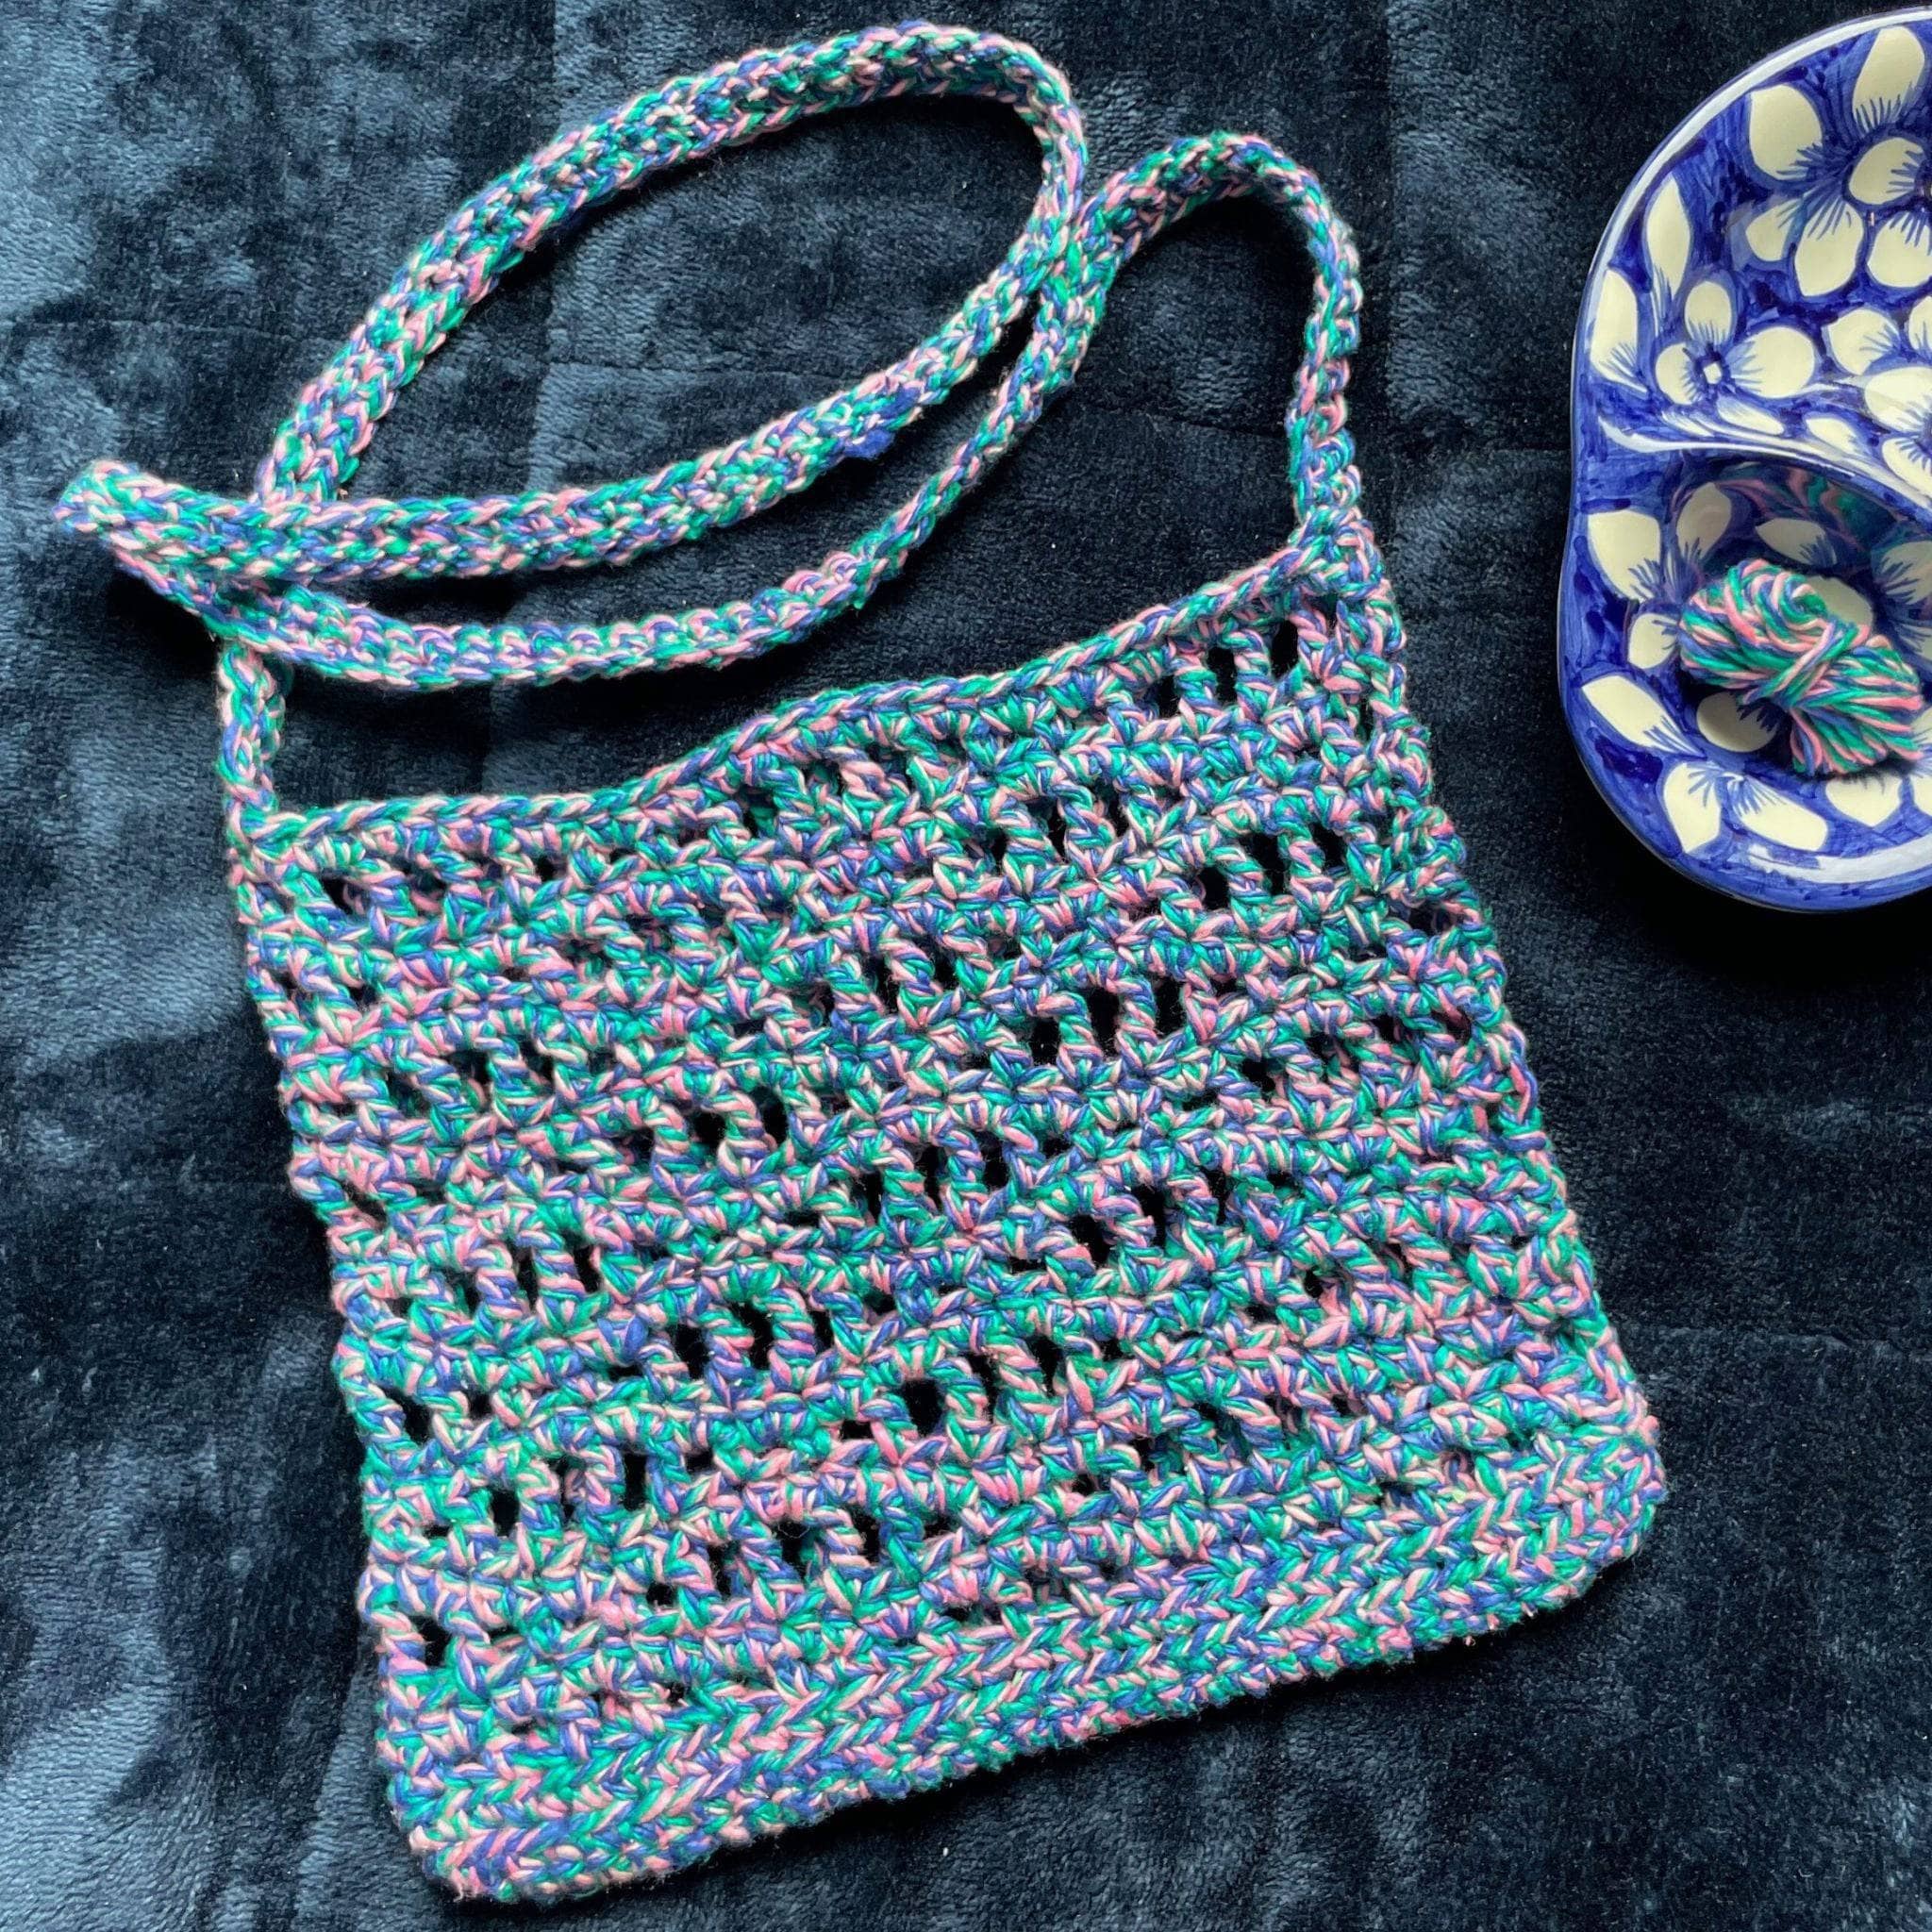 Auden Crochet Bag – FREE PATTERN – Lakeside Loops